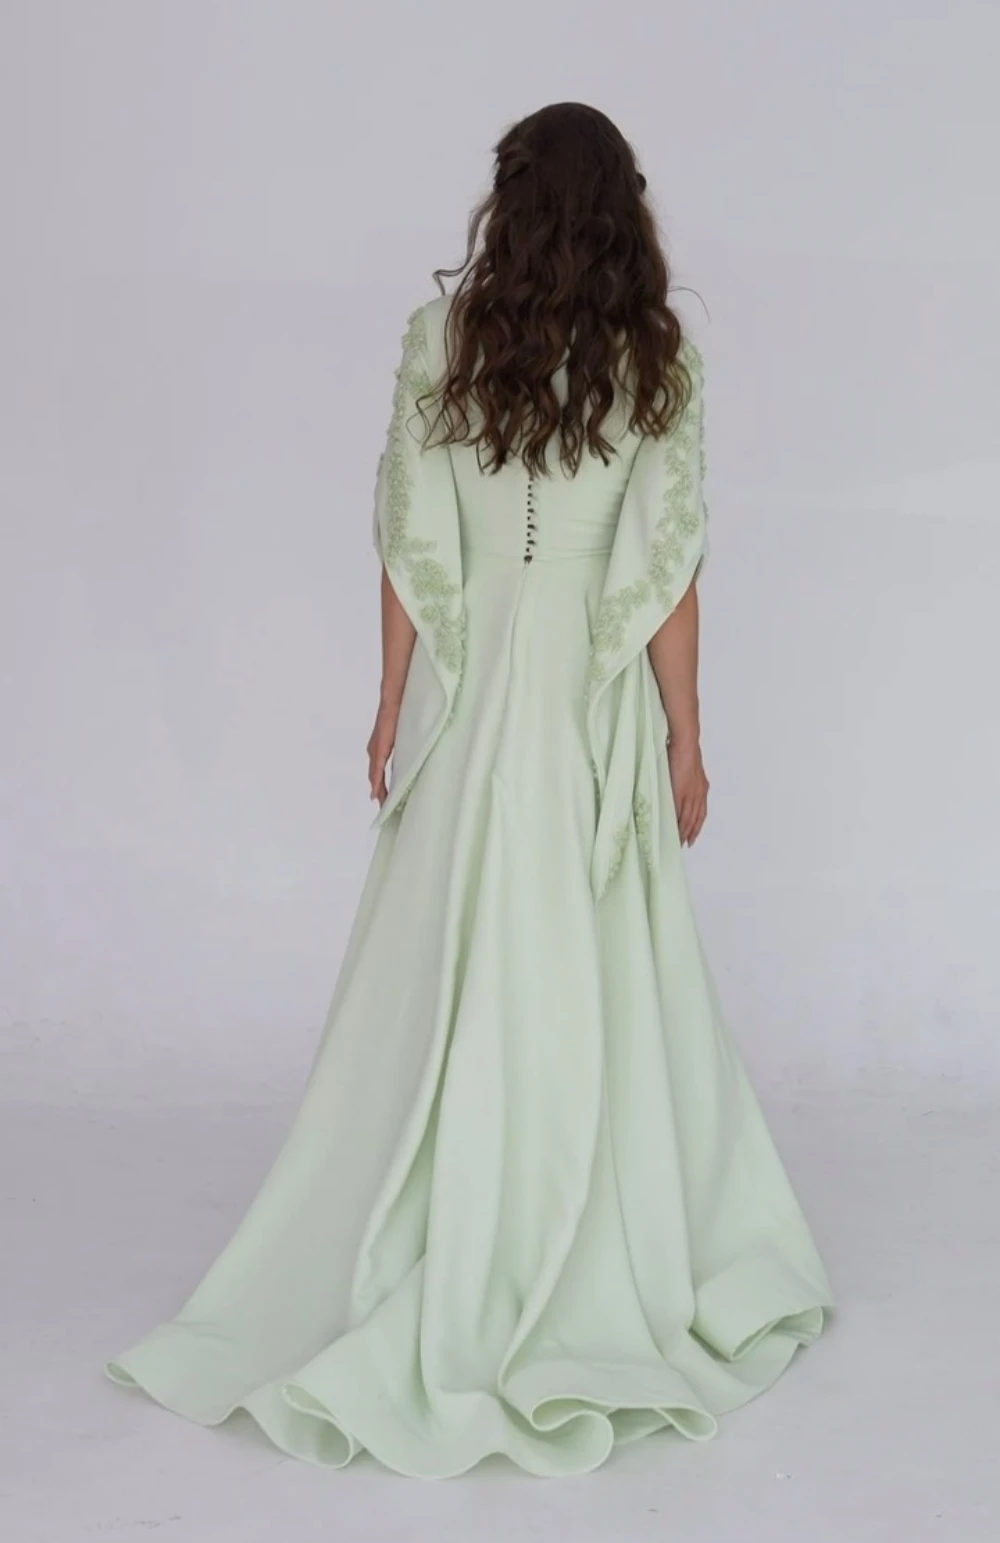 Ples šaty móda skvost a-line soumrak  kvést šifon formální příležitost talár vestidos de noche elegantes para mujer